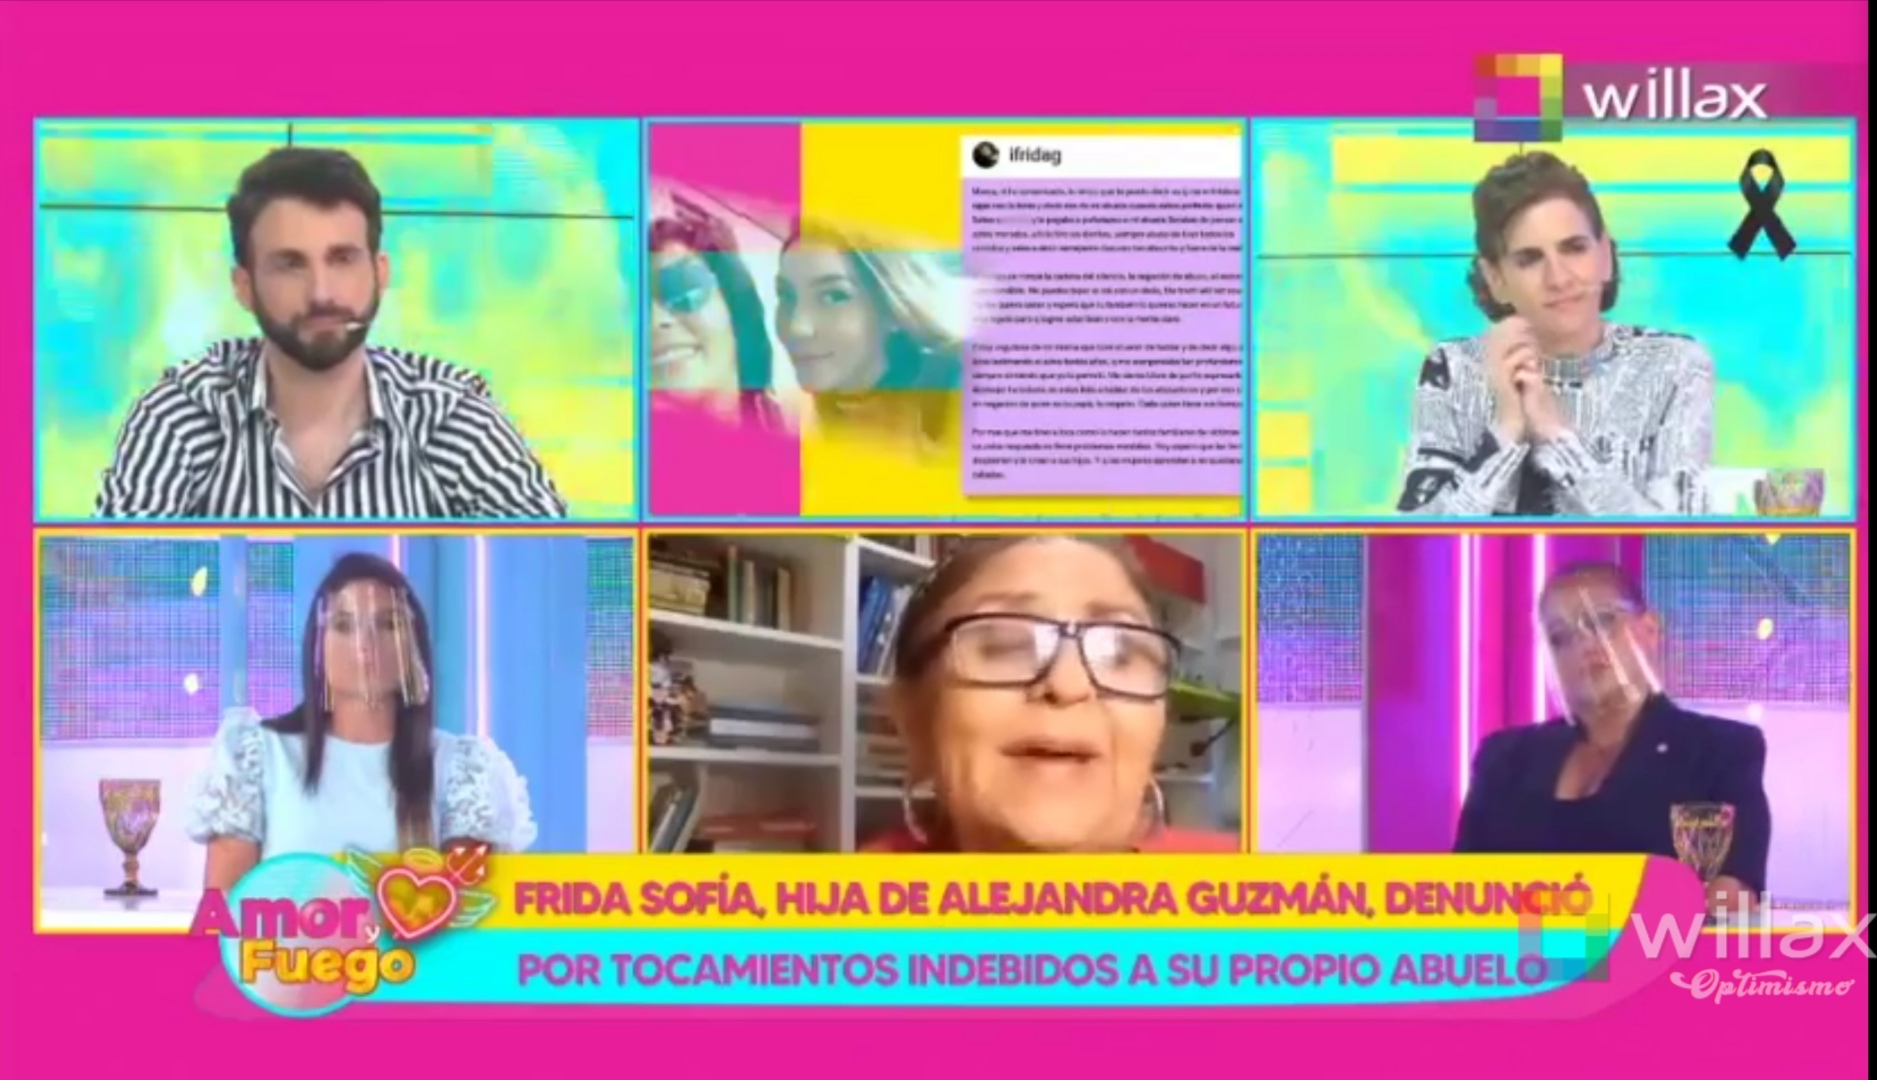 Amor y Fuego: Frida Sofía, hija de Alejandra Guzmán, denunció por tocamientos indebidos a su propio abuelo